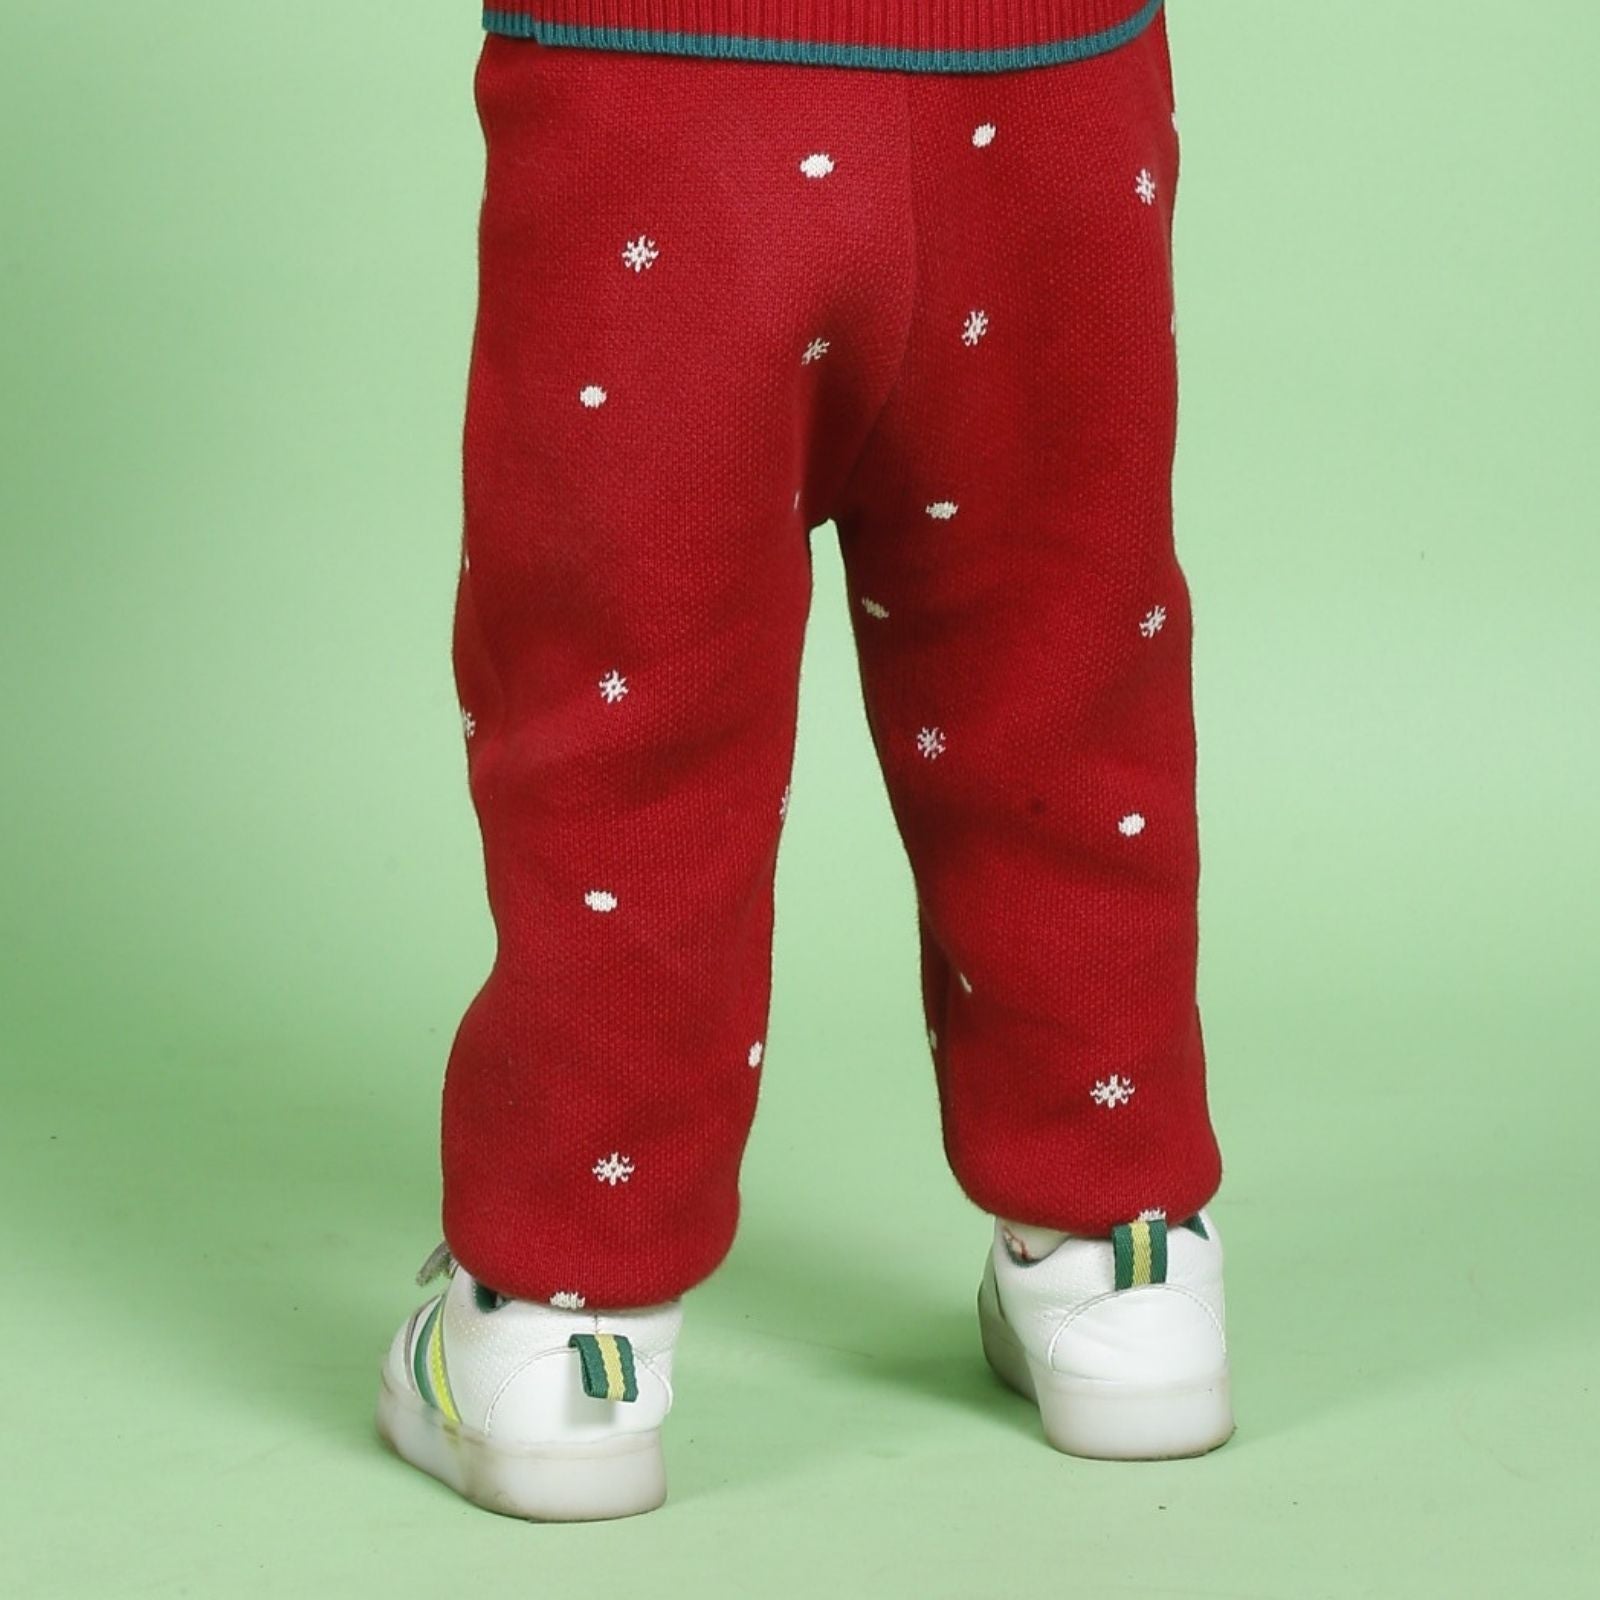 Greendeer Santa & Joyful Reindeer 100% Cotton Sweater with Red Lower Set of 3